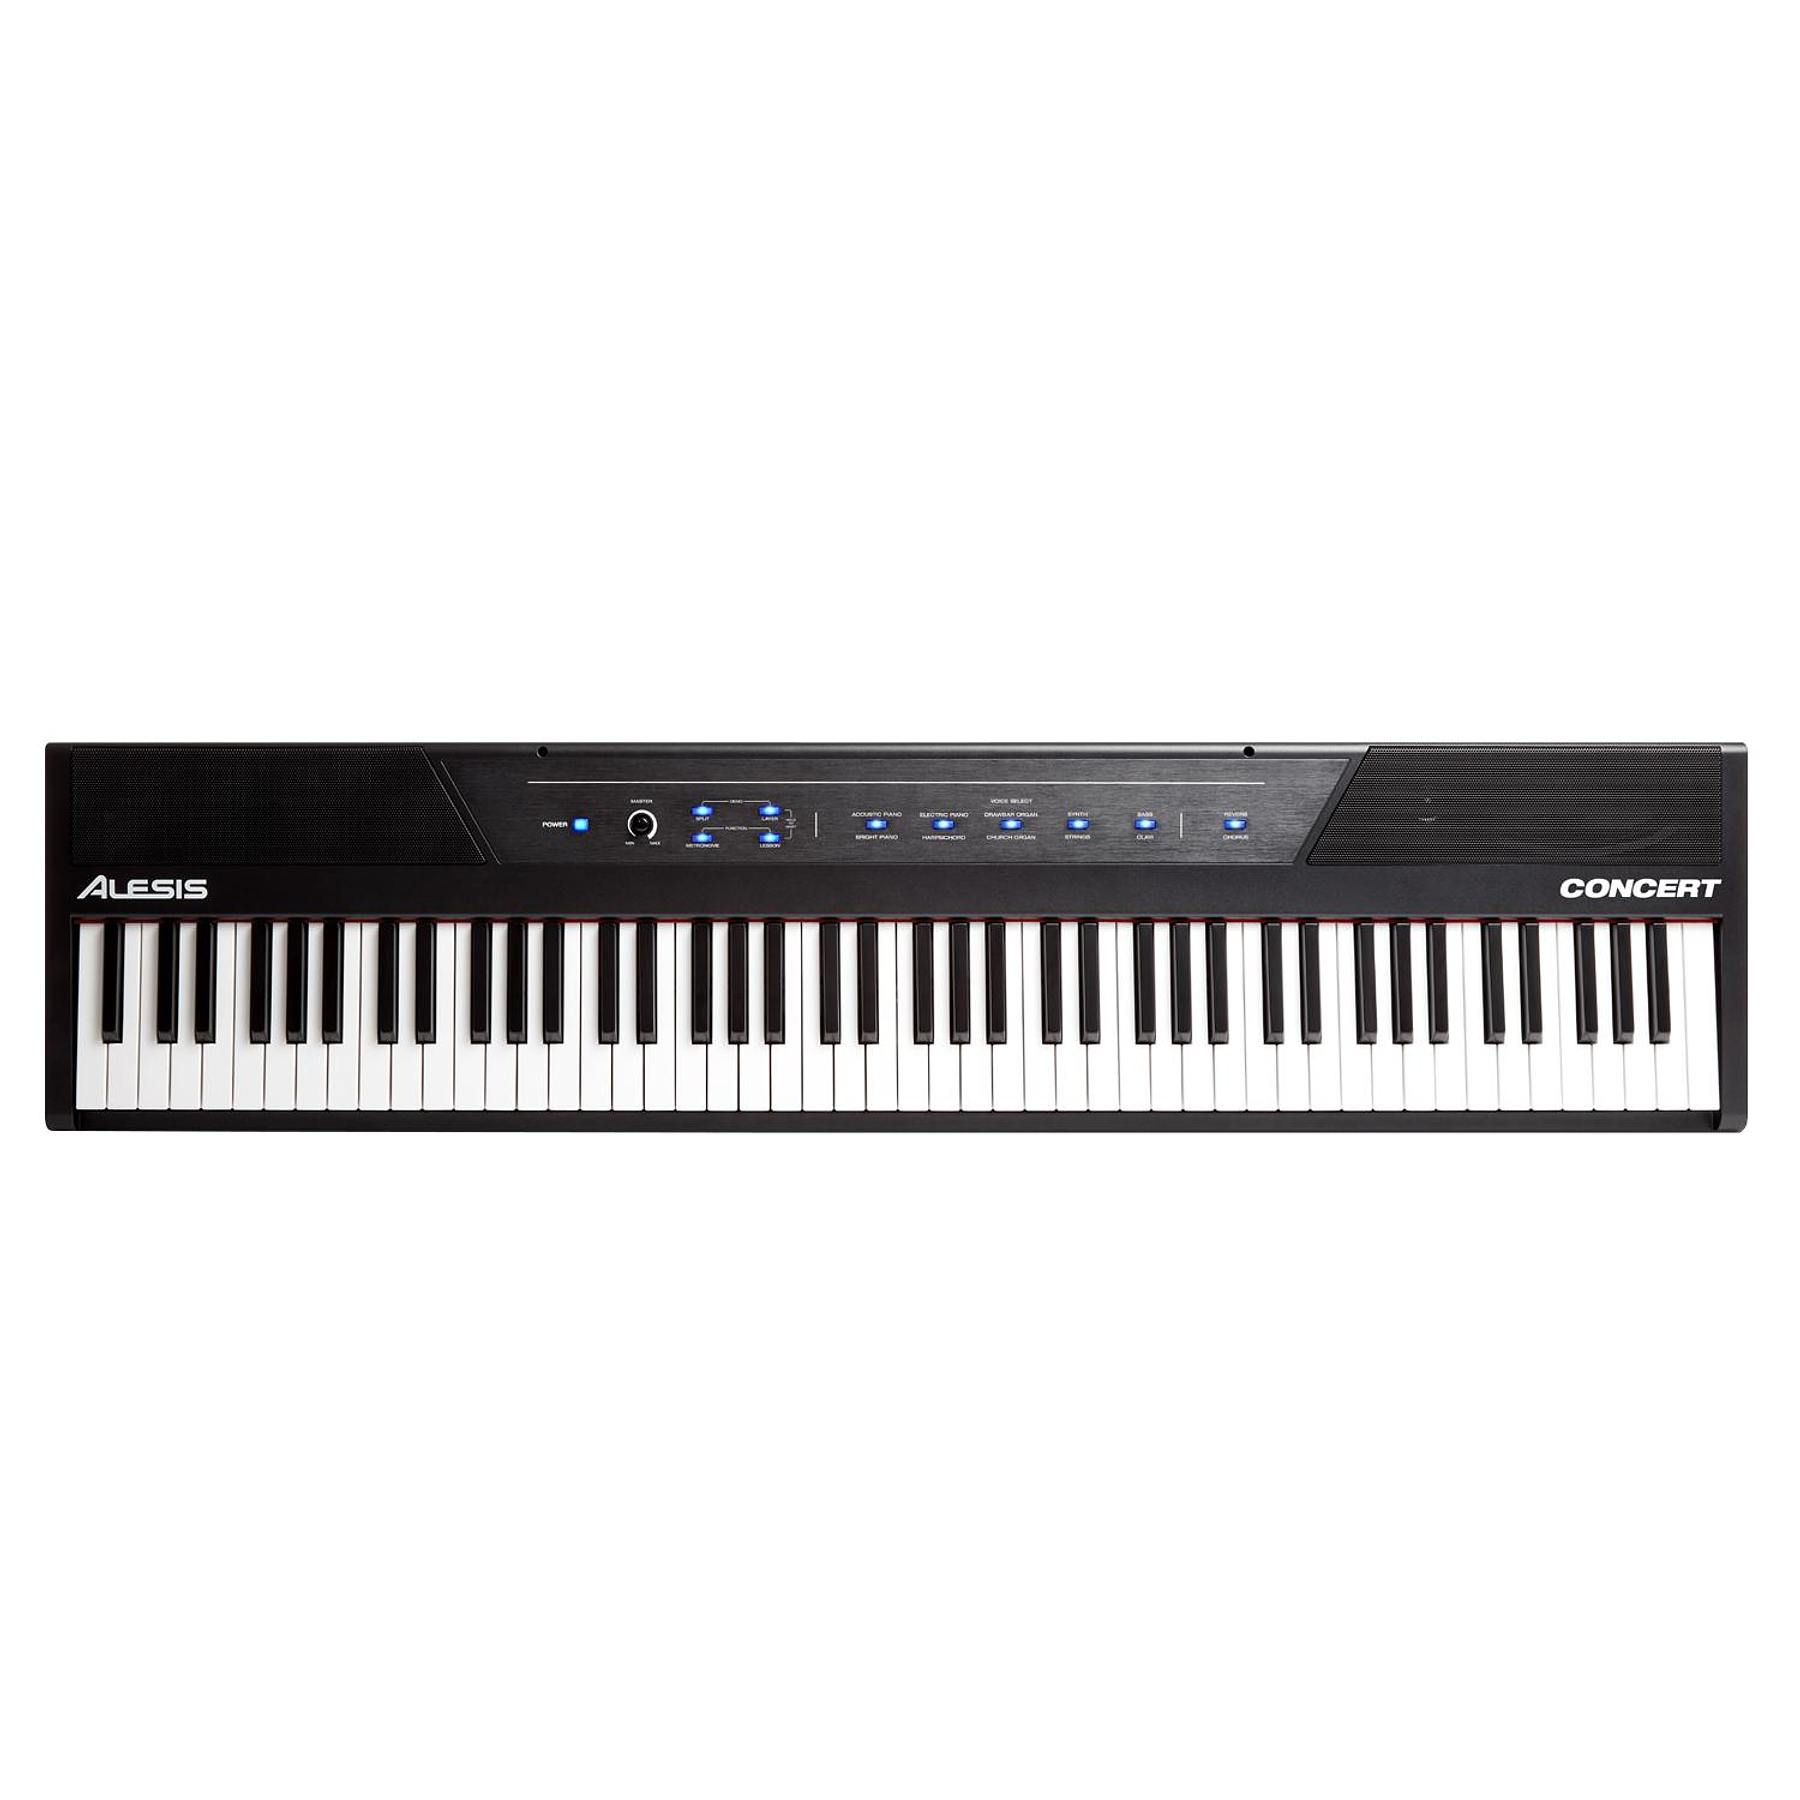 Nuevo Alesis Concert piano digital con 88 botones semipesados en tamaño estándar 